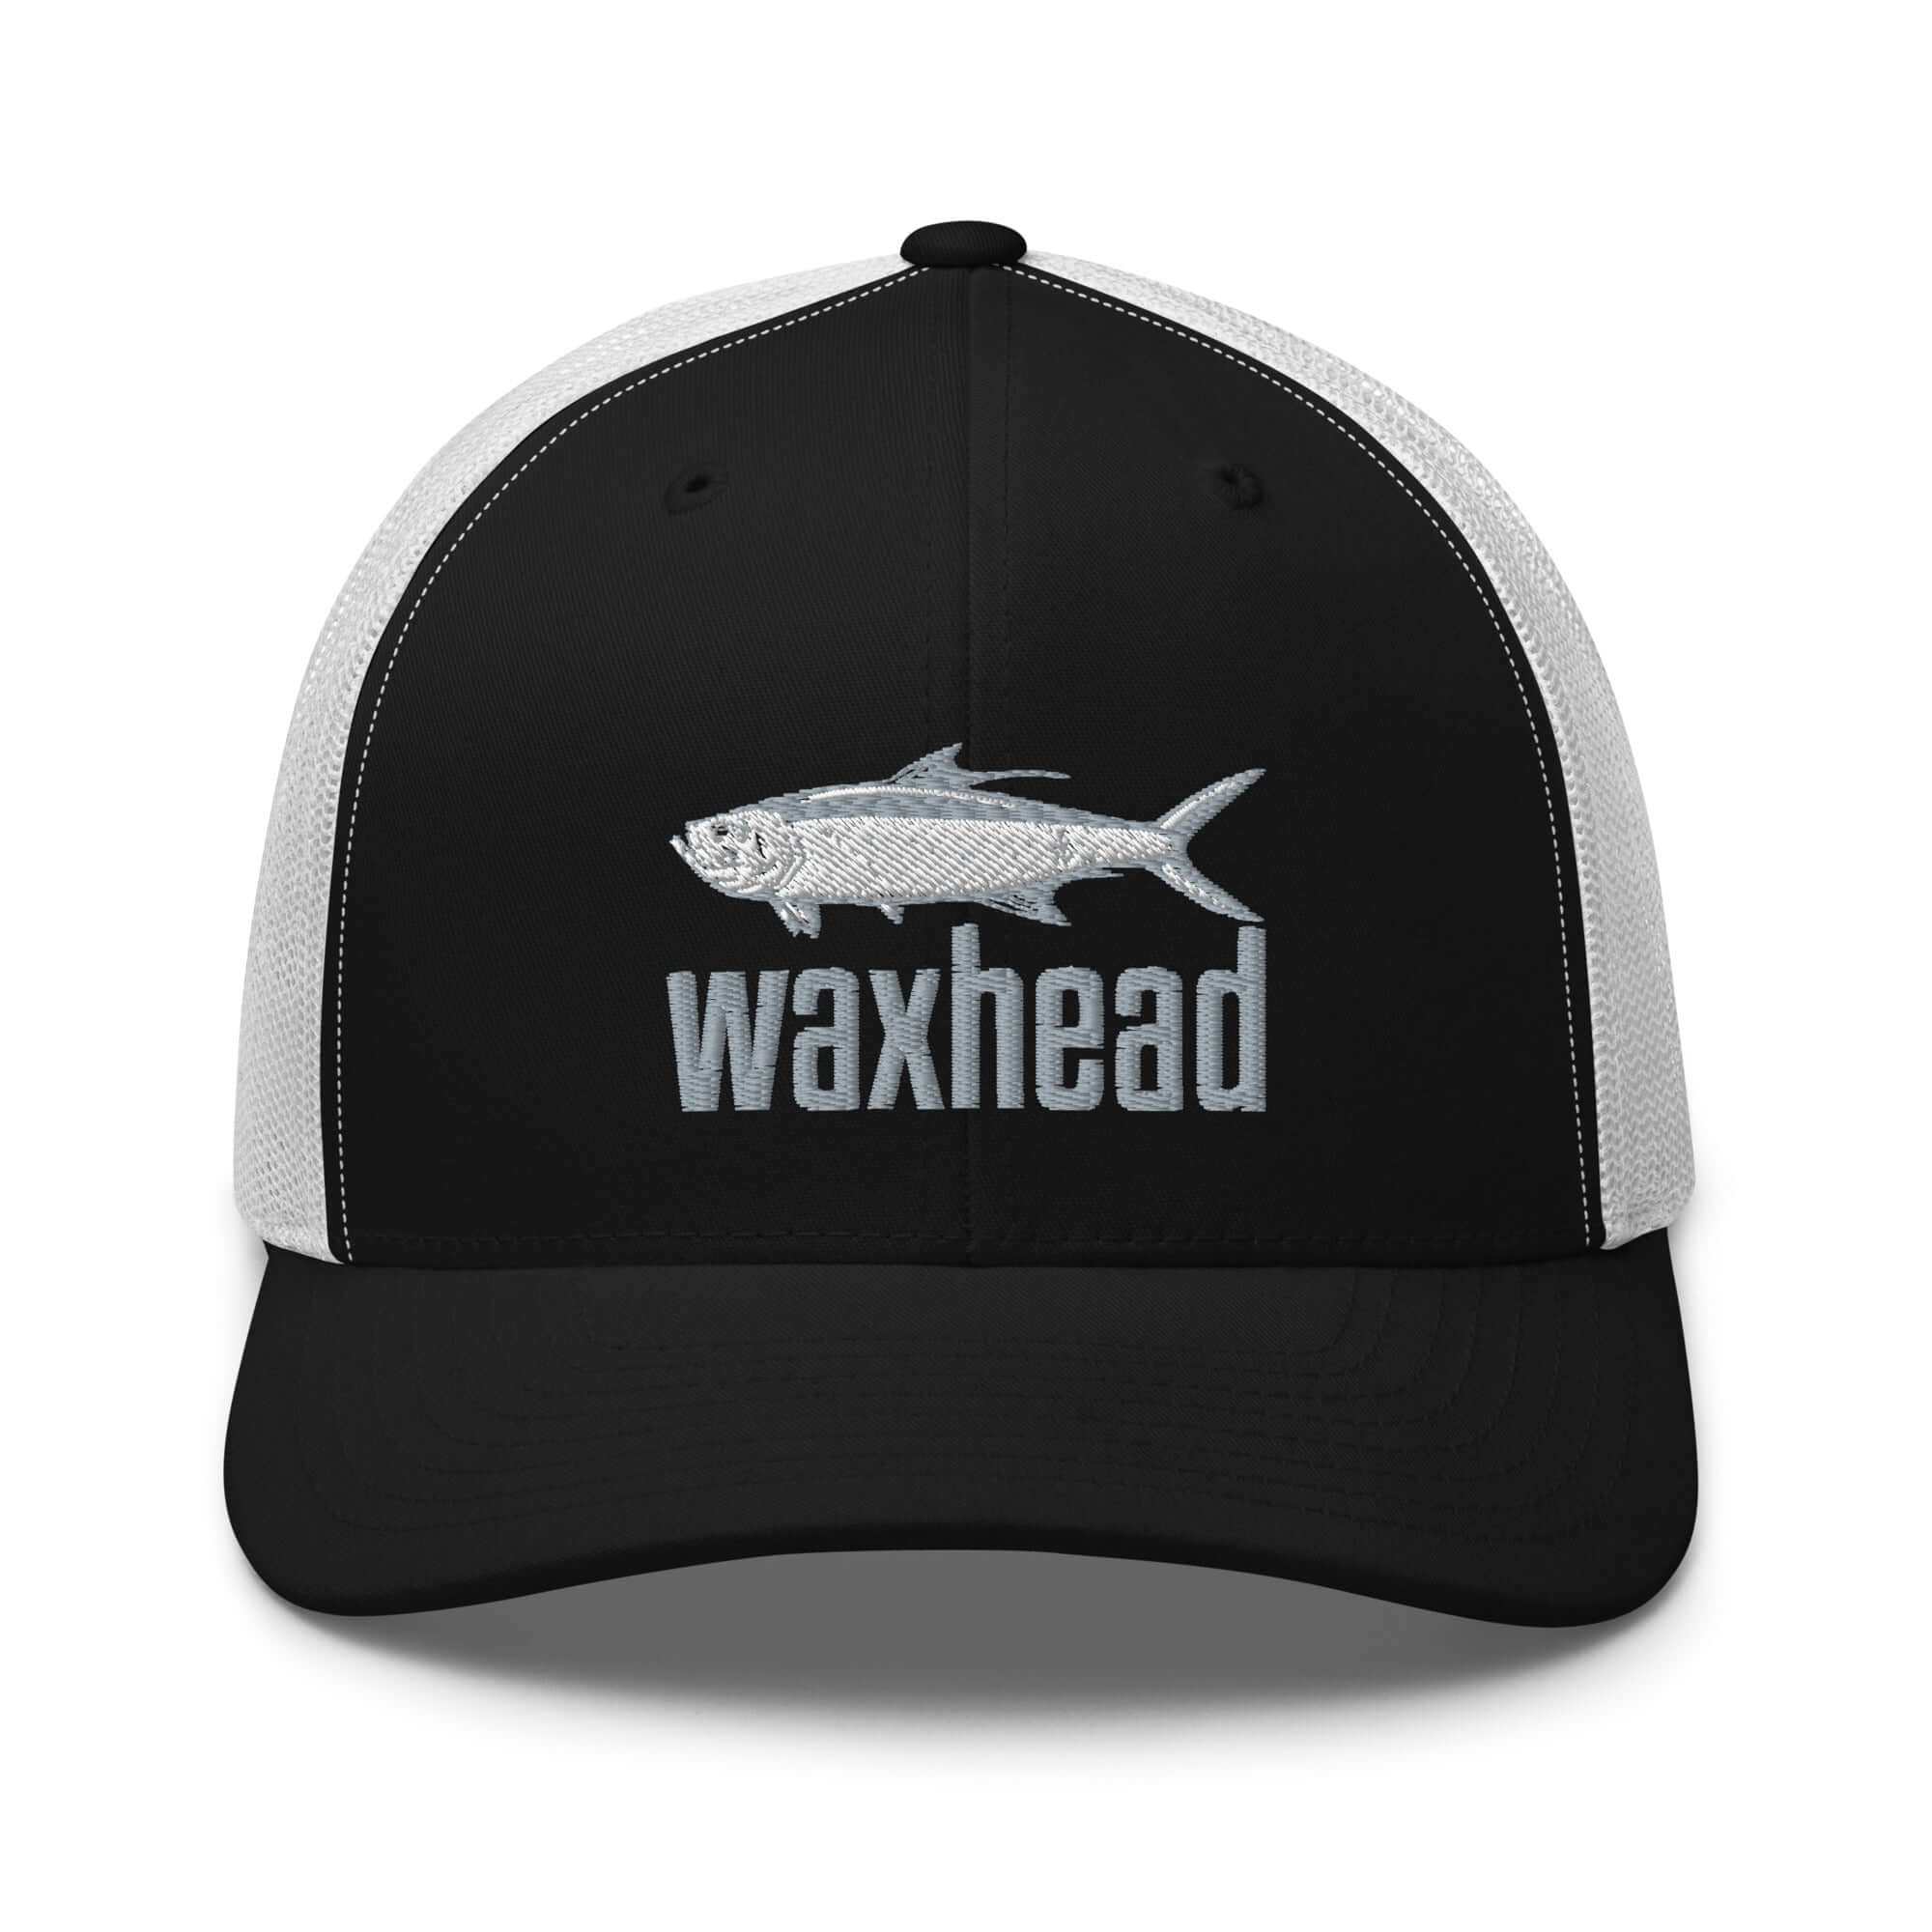 Shop Fishing Hats For Men & Women, Fishing Caps